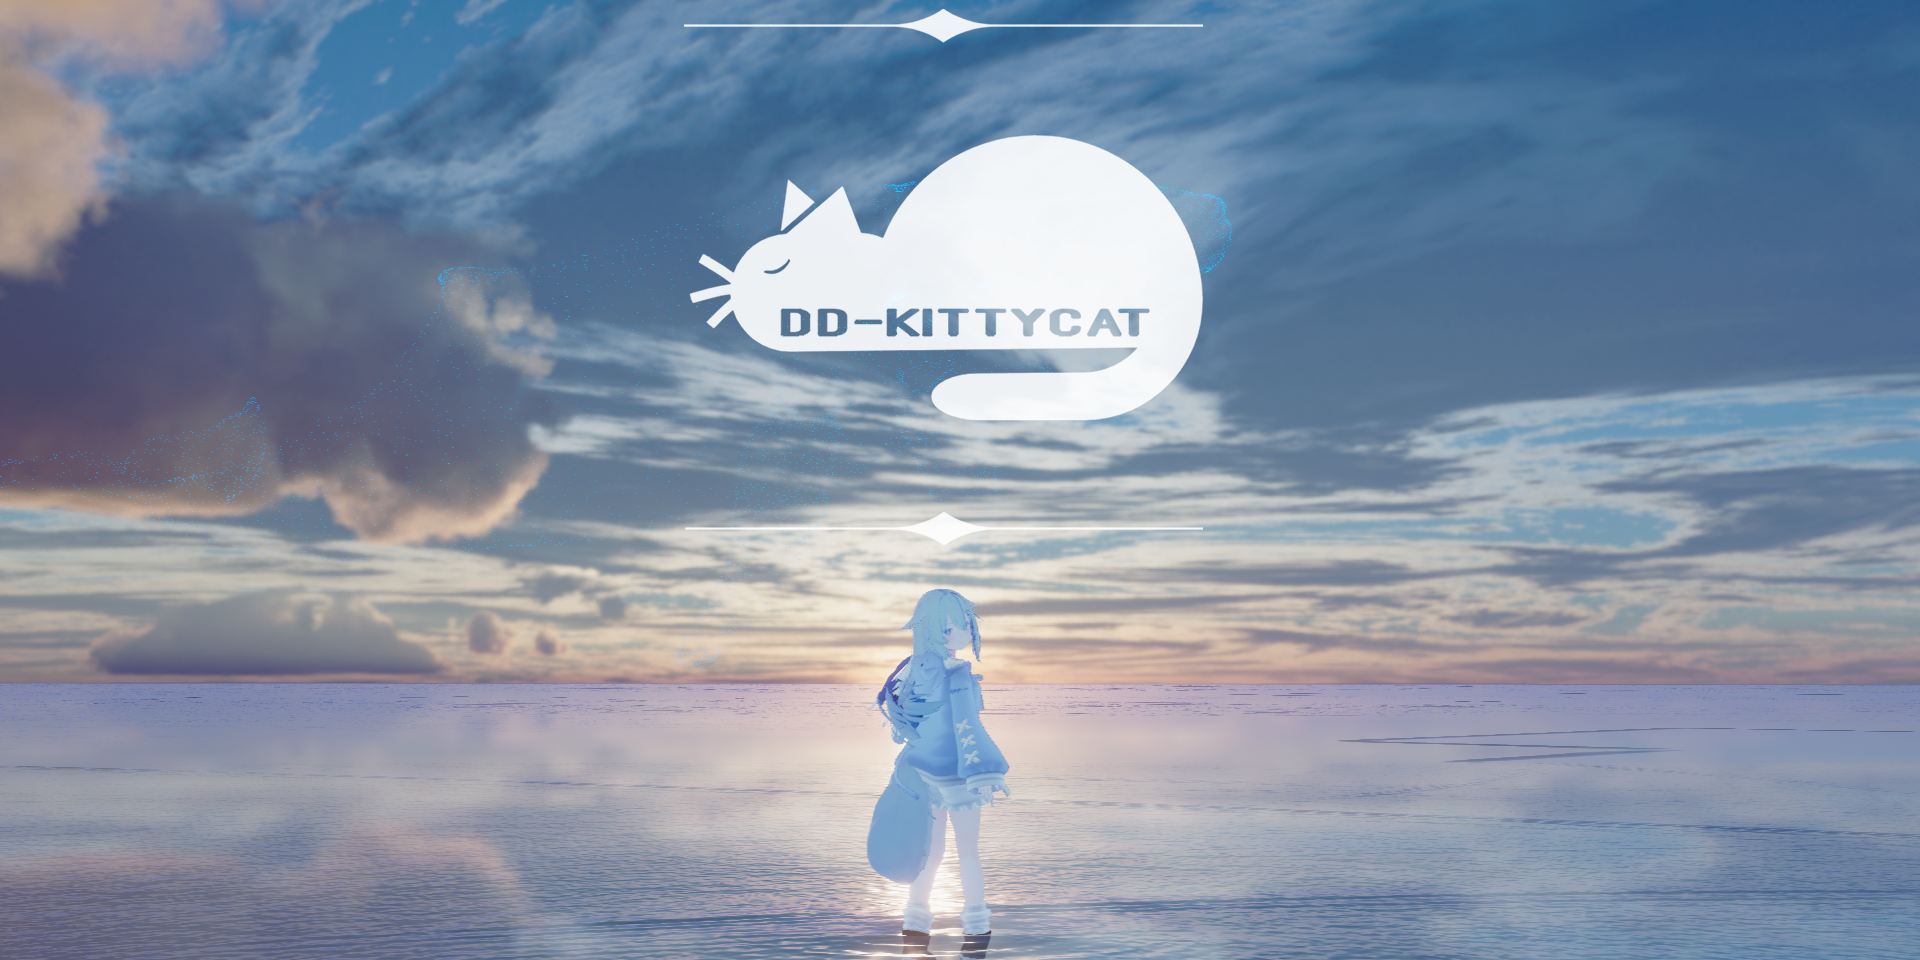 DD-Kittycat